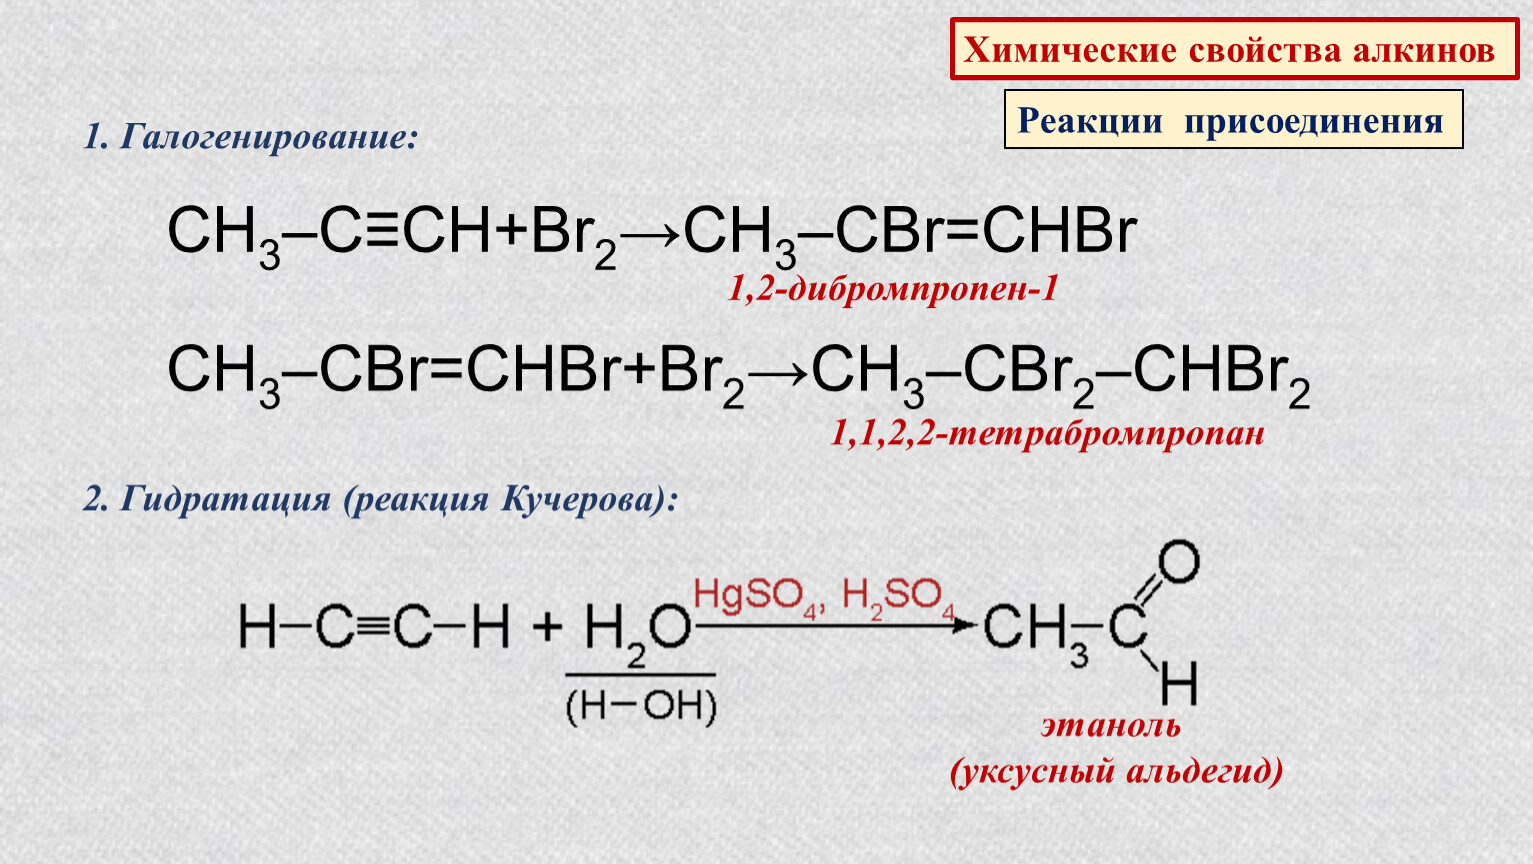 Ch ch chbr chbr. Химические свойства алкинов реакции присоединения br2. Реакция галогенирования алкинов. Химические свойства алкинов реакции присоединения. Гидратация уксусного альдегида.